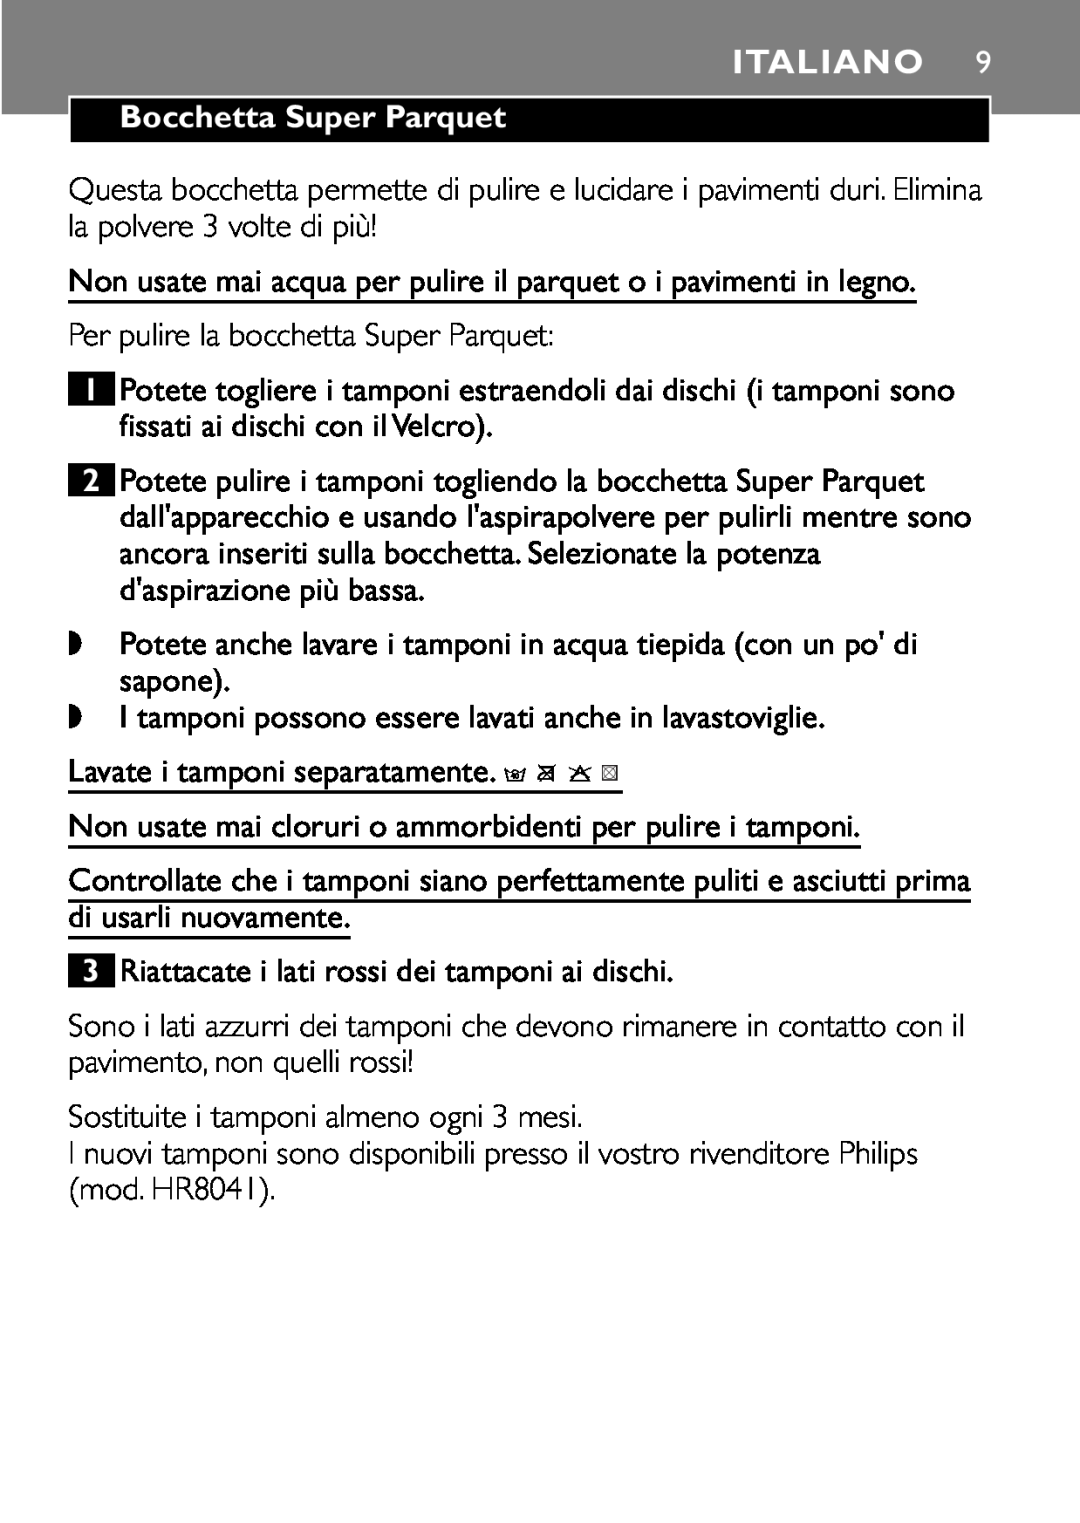 Philips FC8042 manual Italiano, Bocchetta Super Parquet 